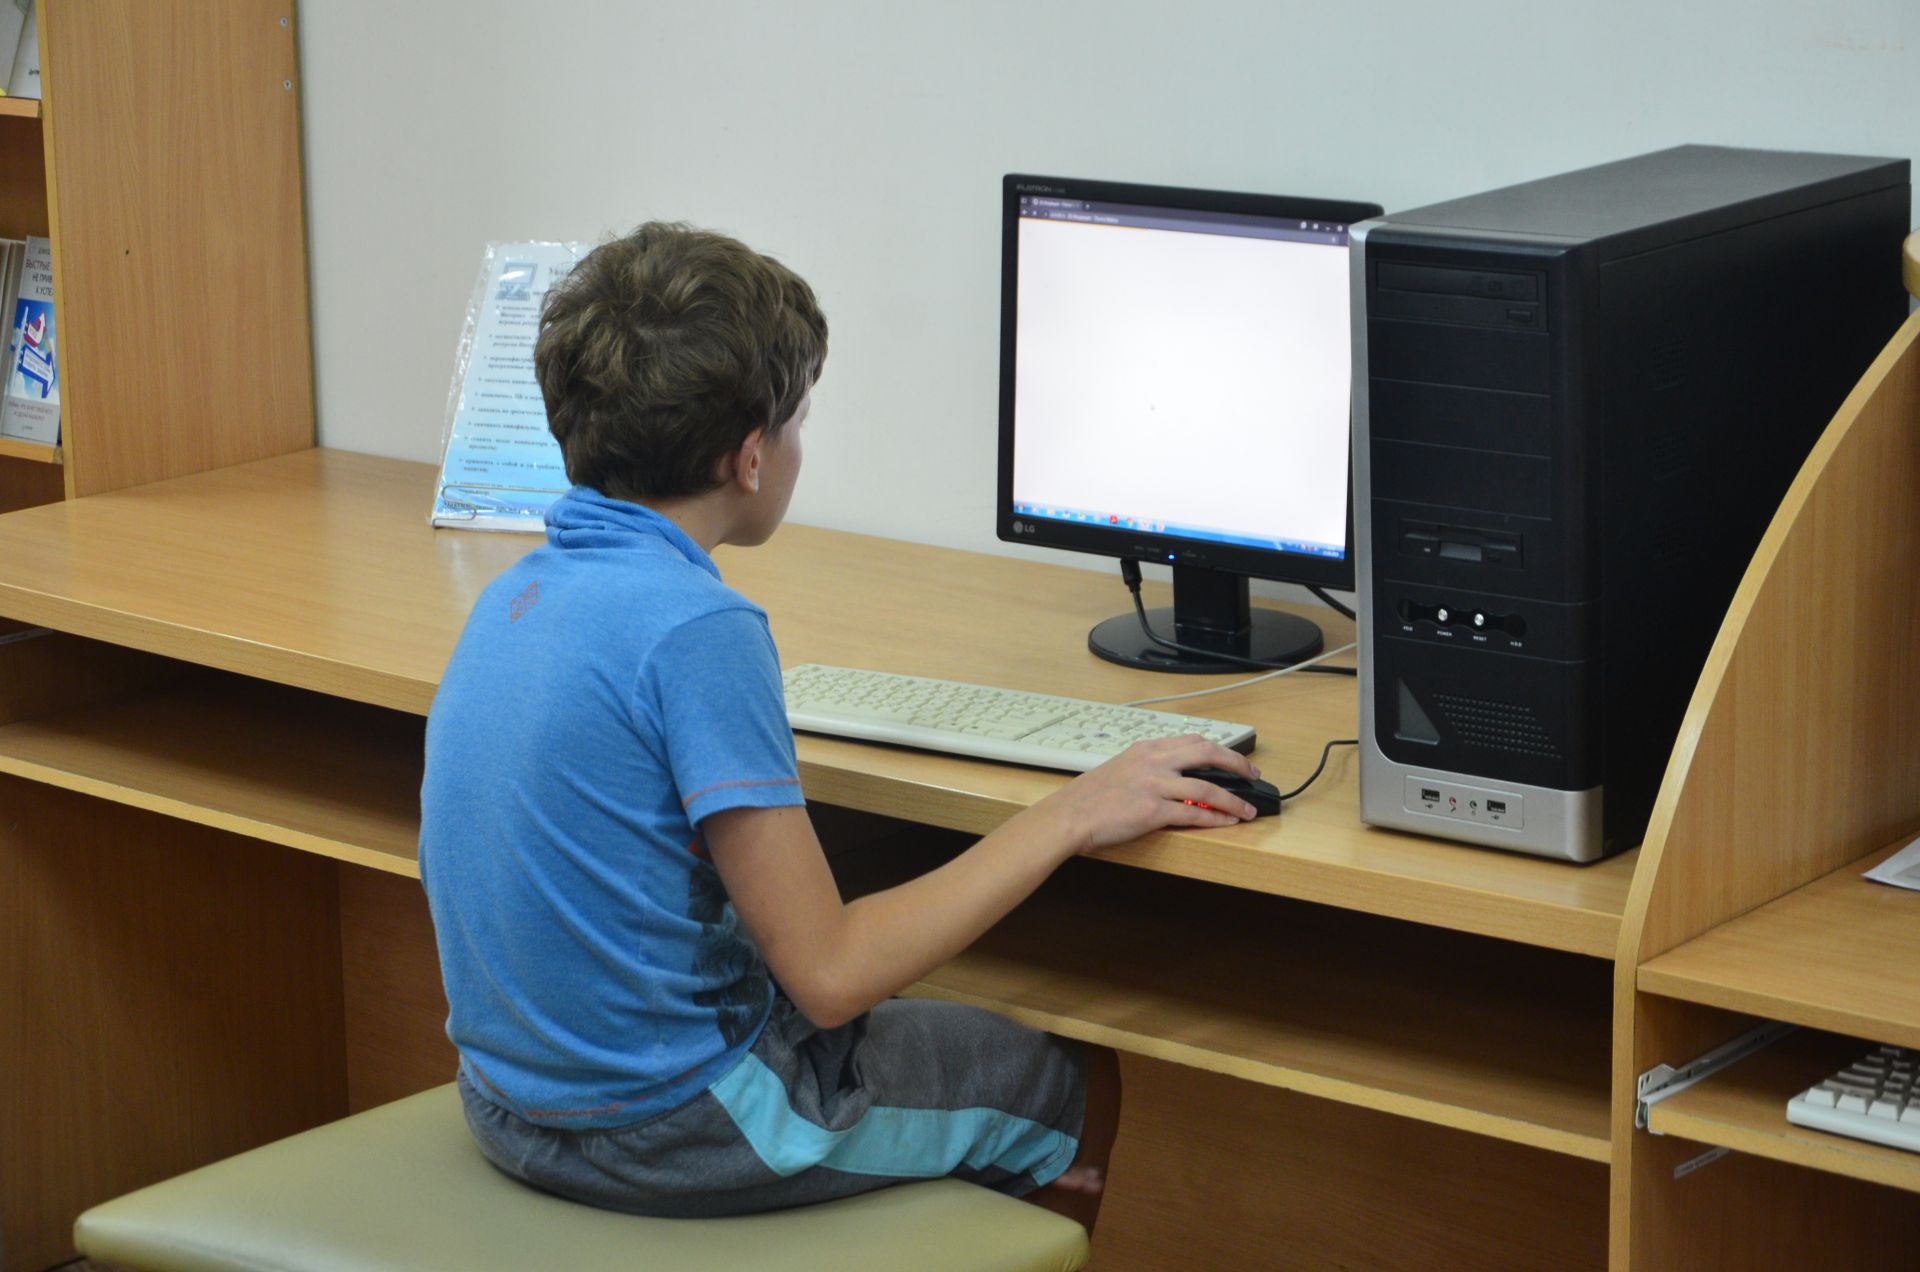 Компьютер дети школа. Компьютер для учебы. Компьютер для школьника. Компьютер в школе. Ученик за компьютером.